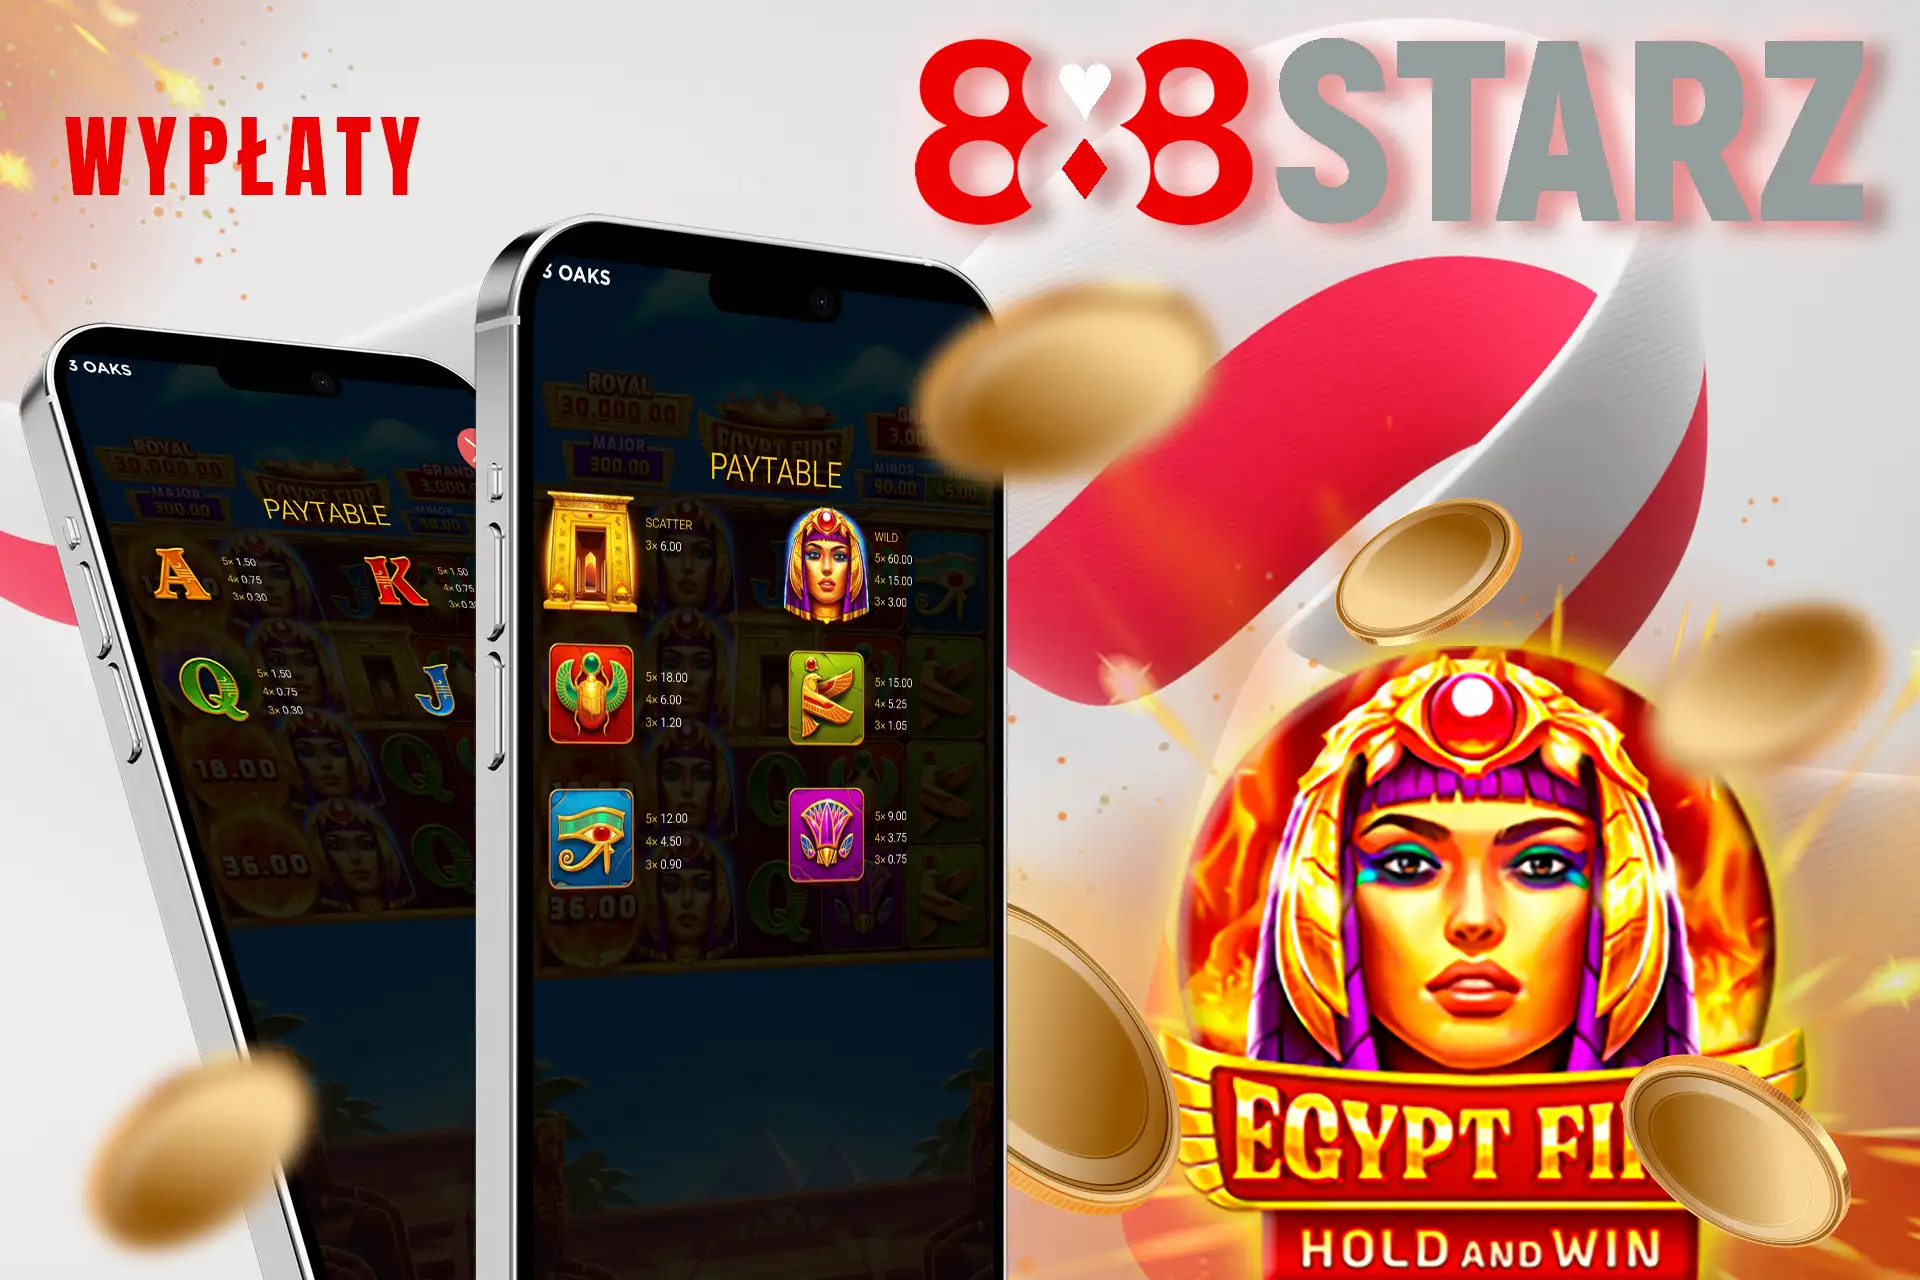 Wypłaty Egypt Fire: Hold and Win na 888starz